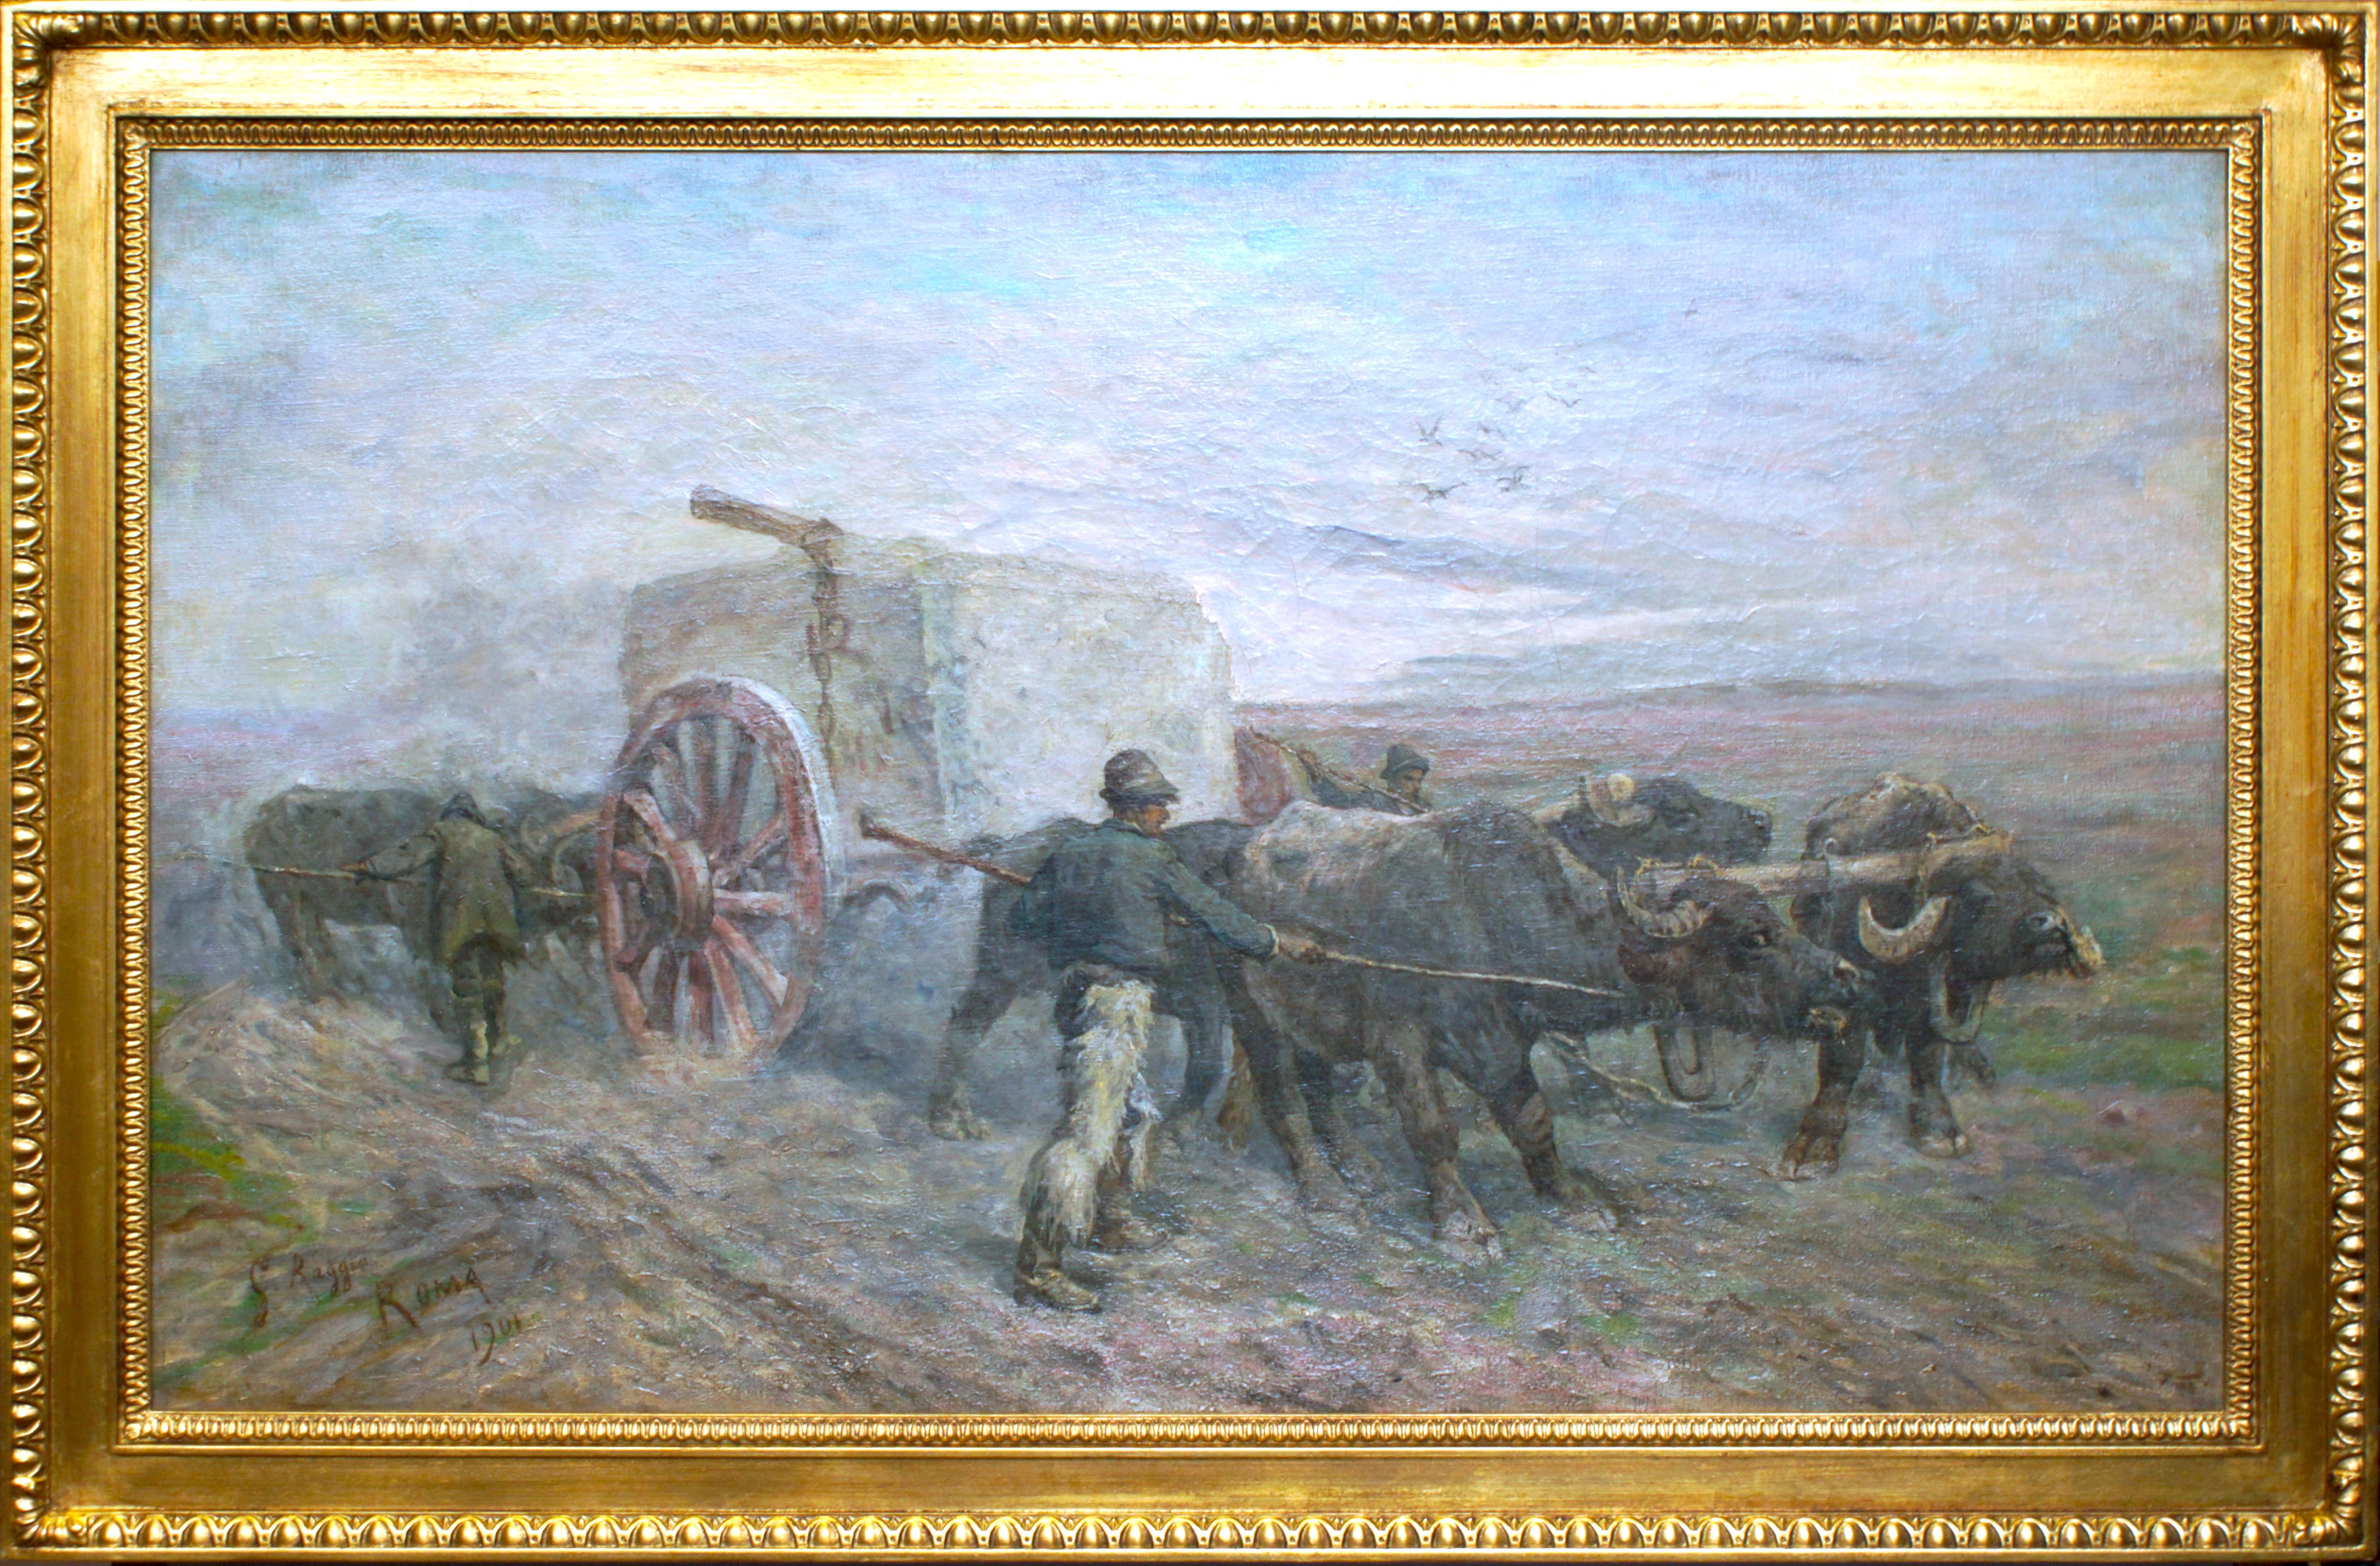 Carriage of Travertin - Huile sur toile de Giuseppe Raggio - 1901